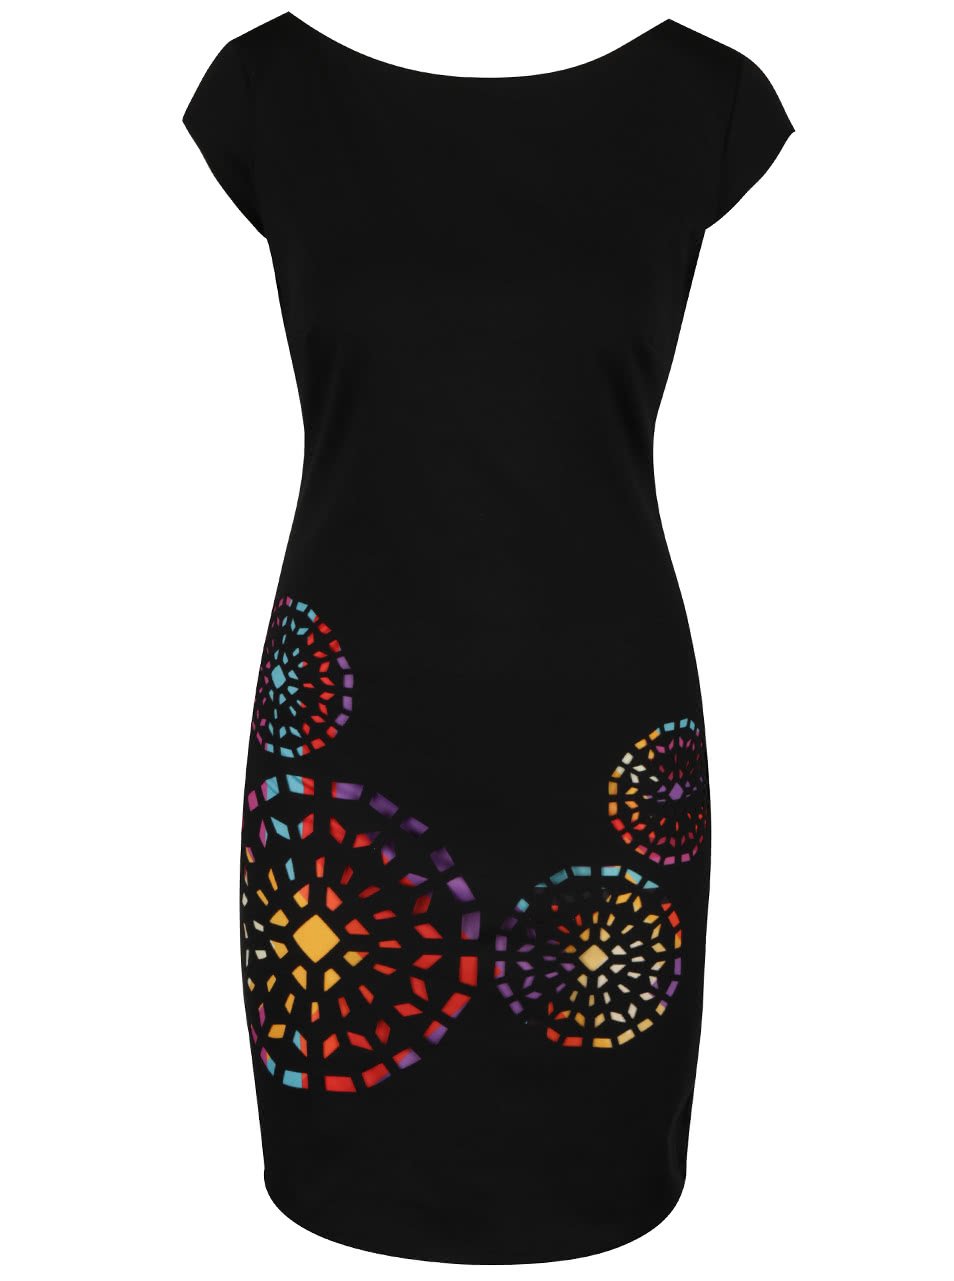 Černé šaty s barevnými ornamenty Desigual Olimpic